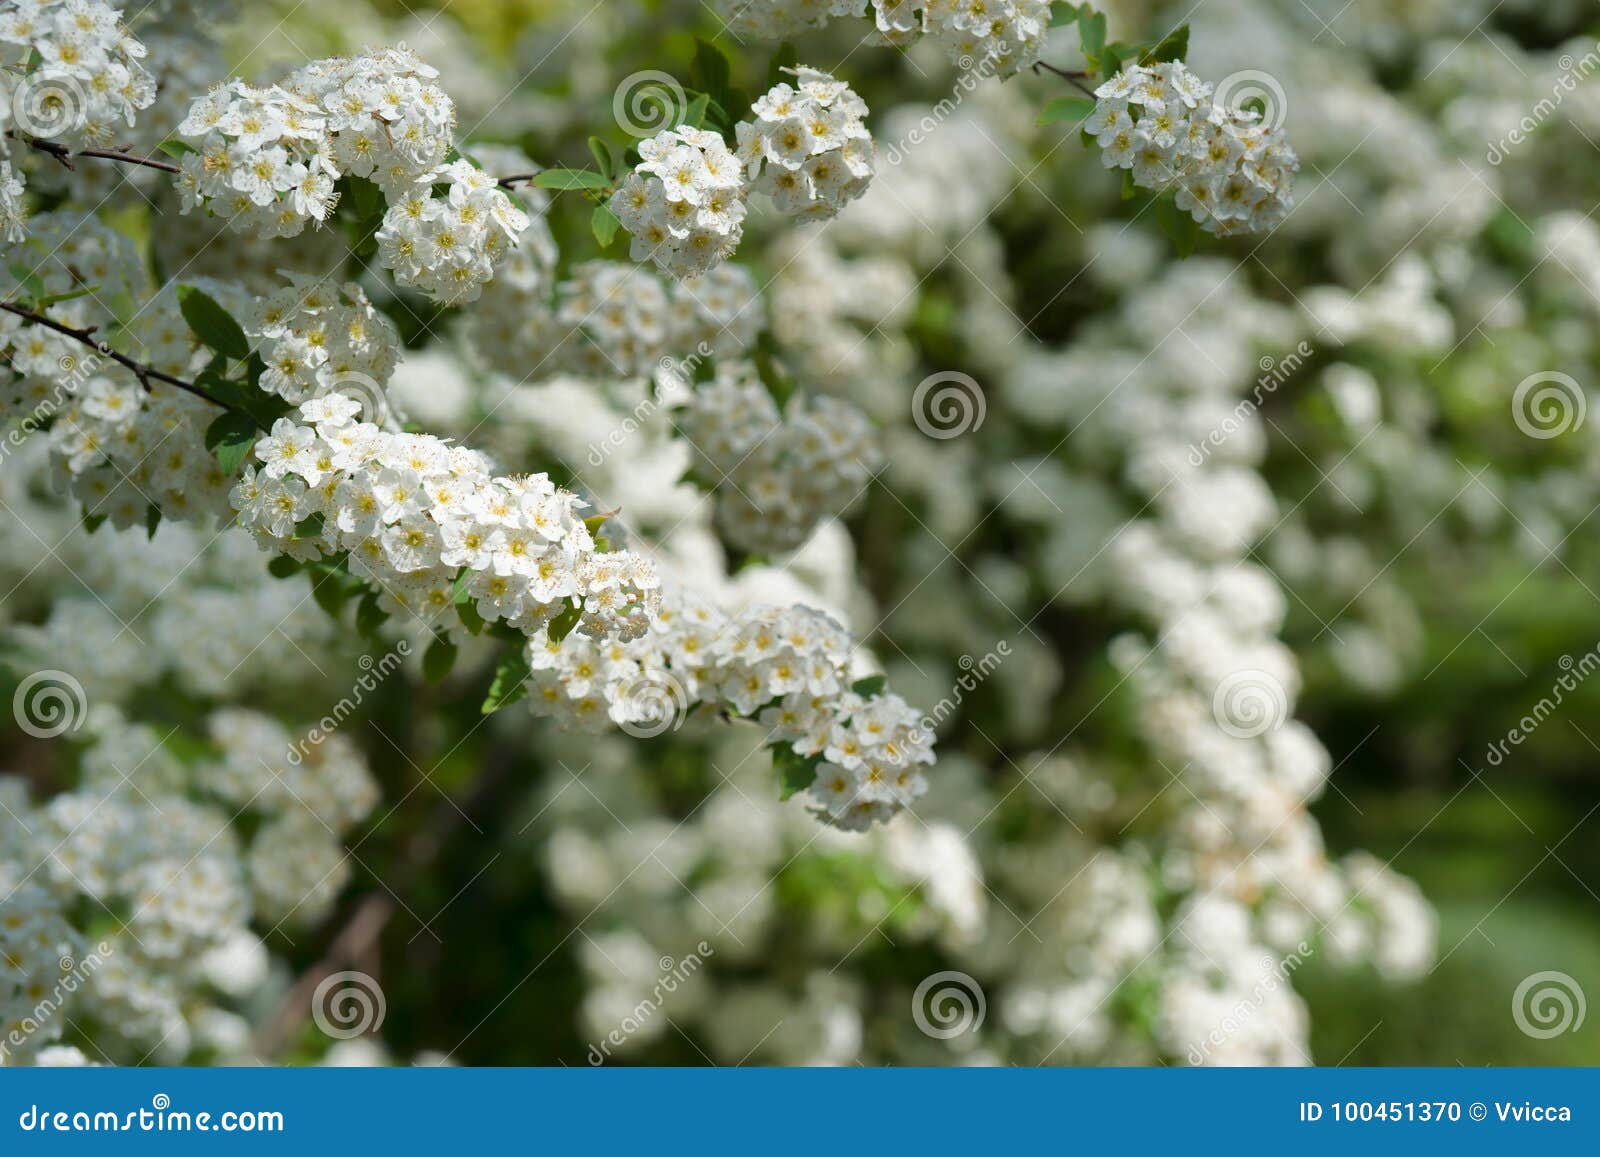 Extreem belangrijk paars Bedenk Struiken Met Kleine Witte Bloemen Stock Foto - Image of struik, struiken:  100451370